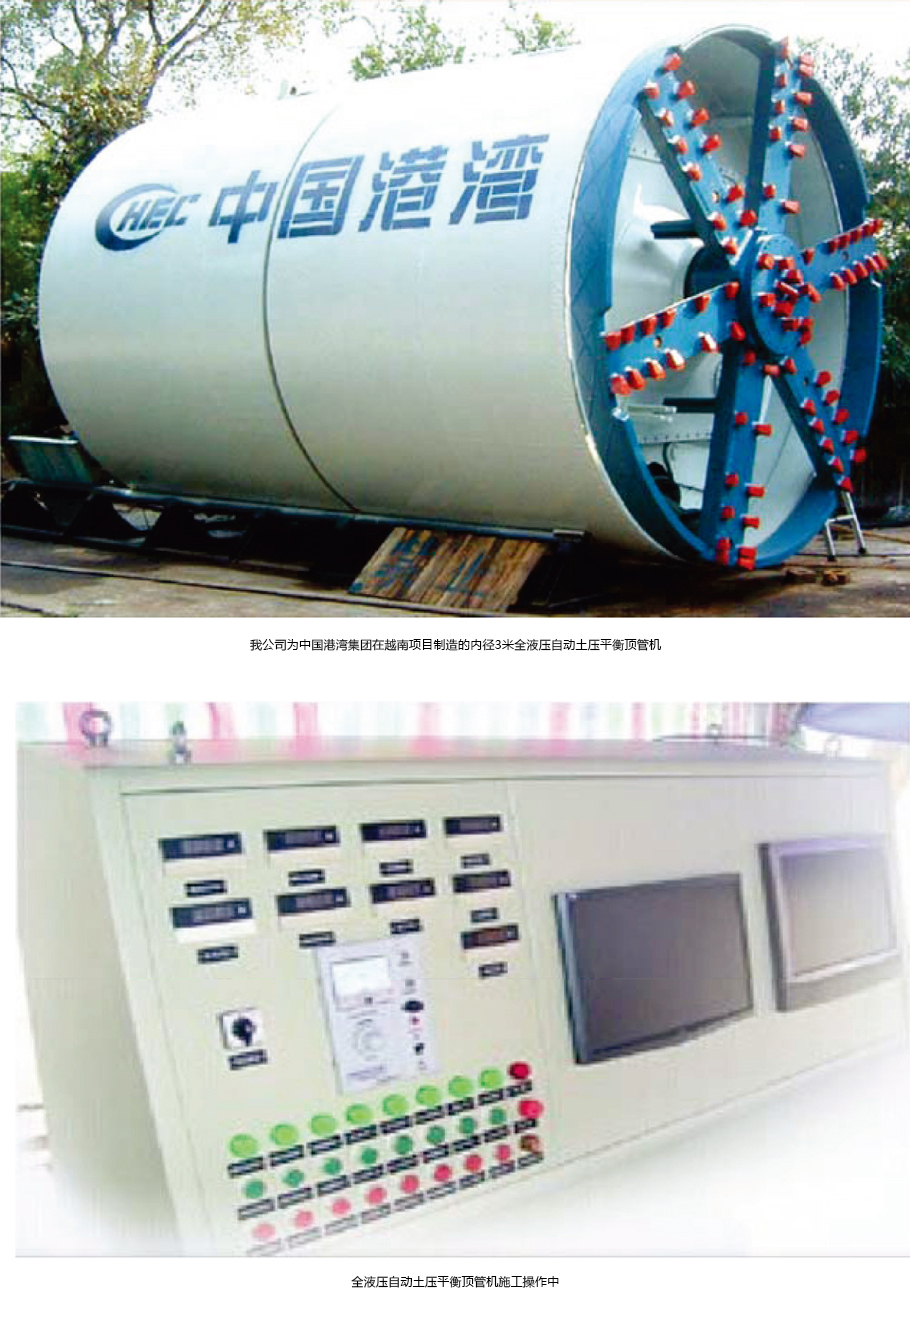 长城顶管机为中国港湾集团在越南项目制造的内径3米的全液压自动土压平衡顶管机